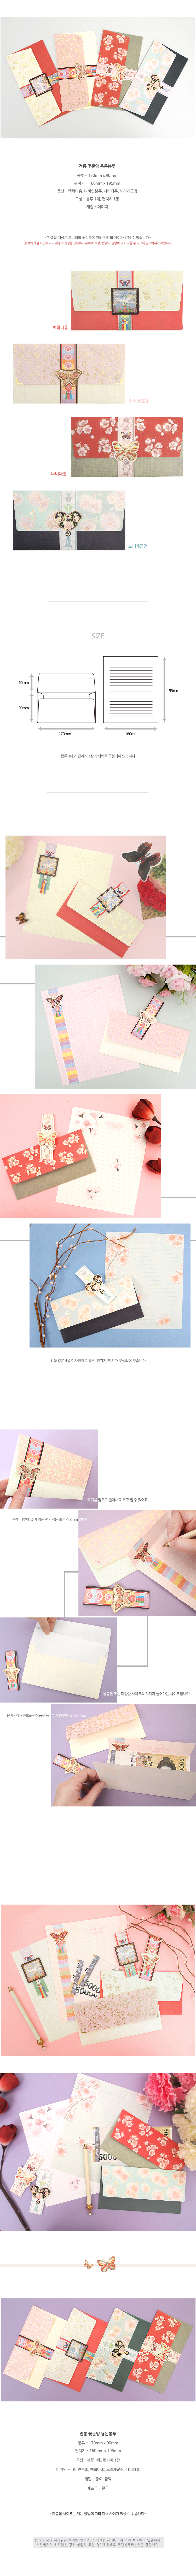 koreanflowerenvelope.jpg